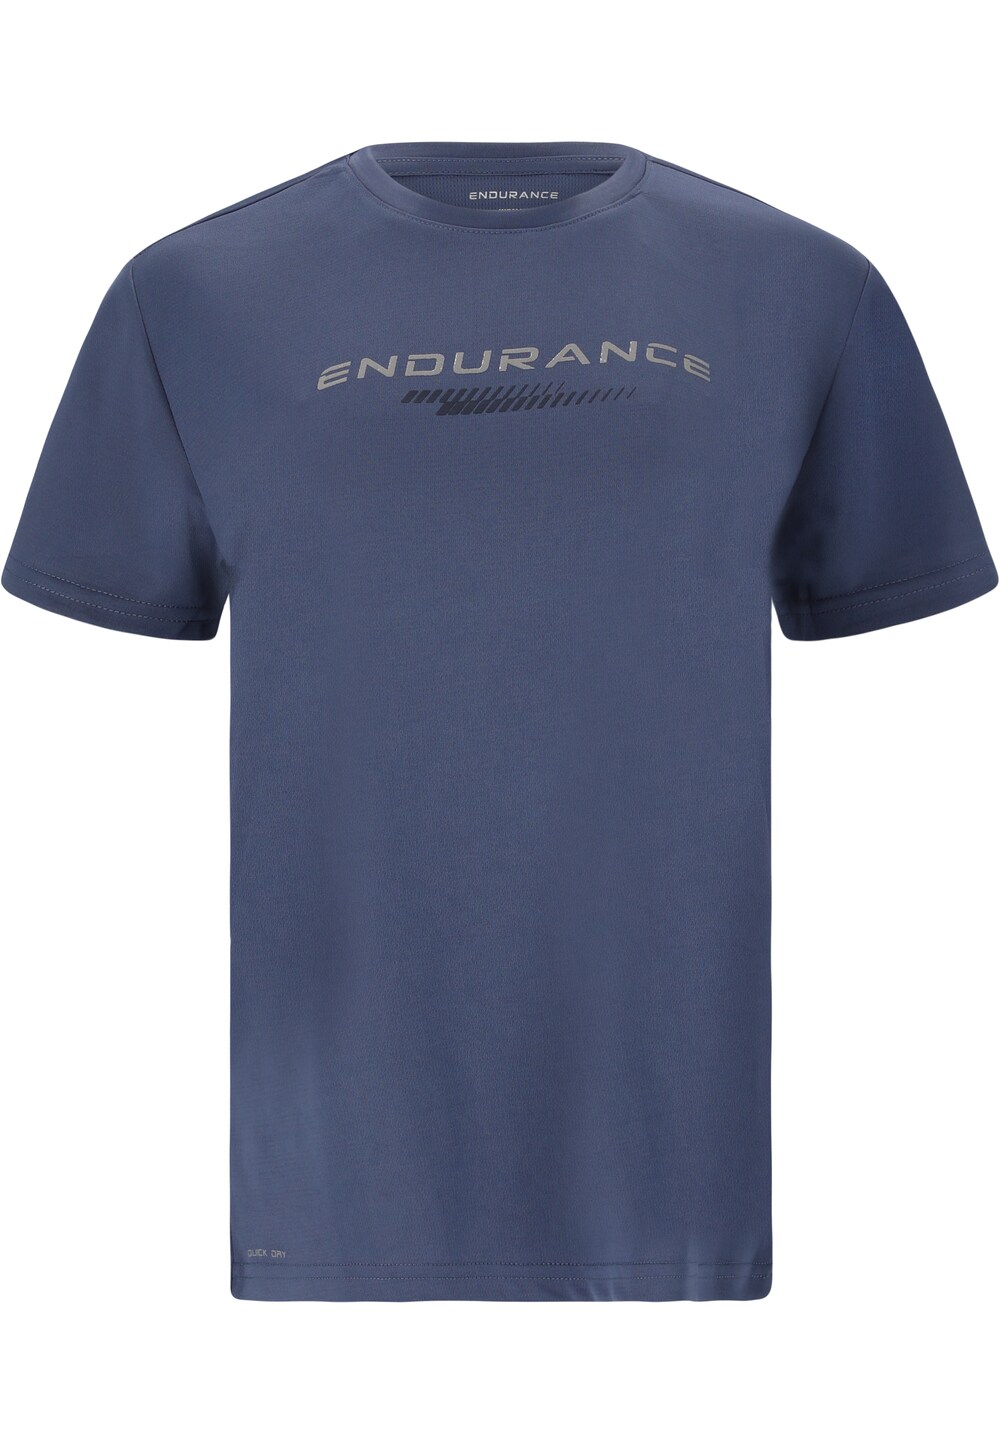 Рубашка для выступлений Endurance Keiling, синий рубашка для выступлений endurance зеленый